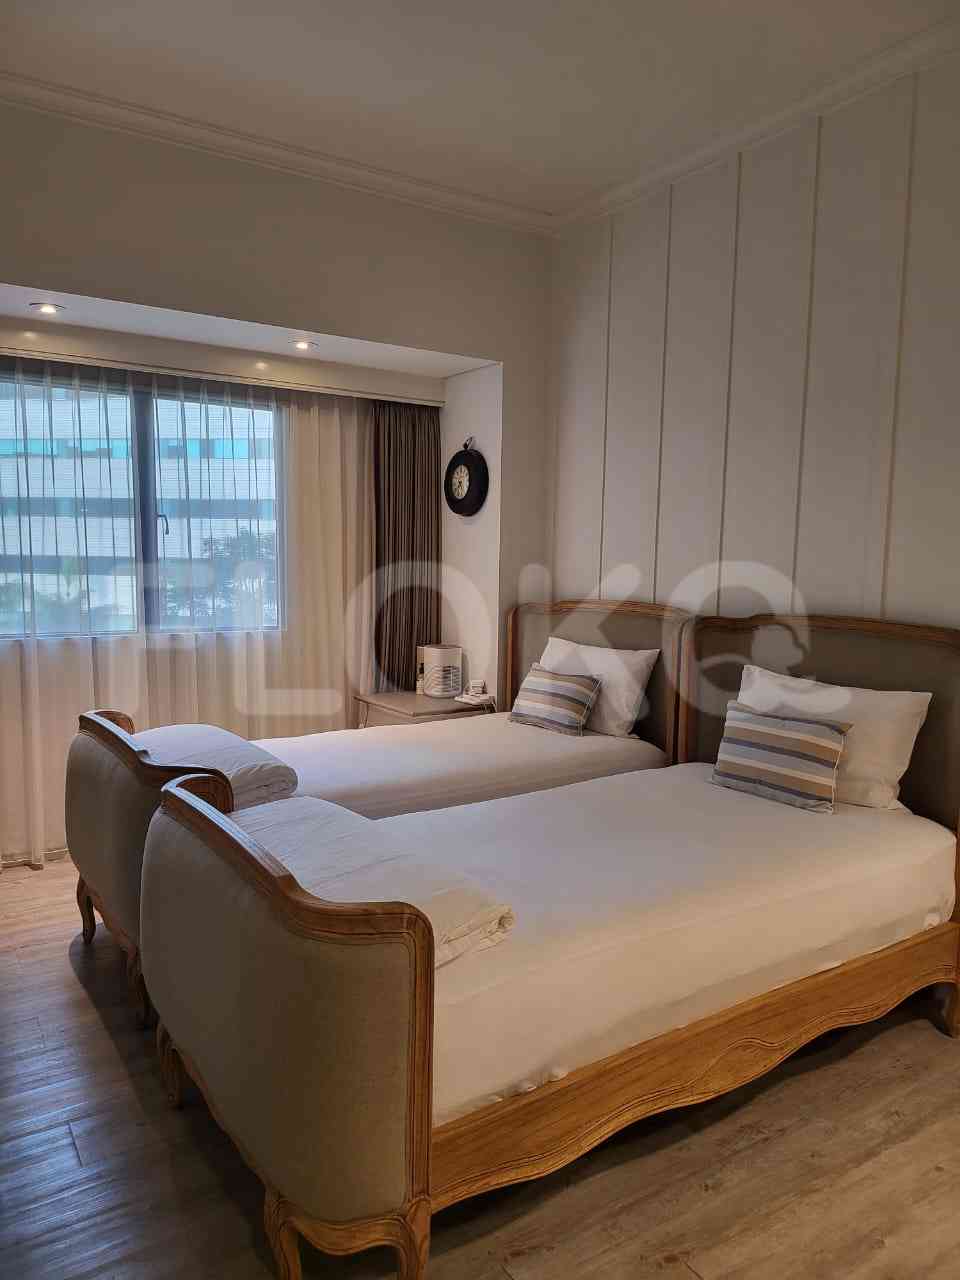 3 Bedroom on 15th Floor for Rent in Apartemen Setiabudi - fku247 4